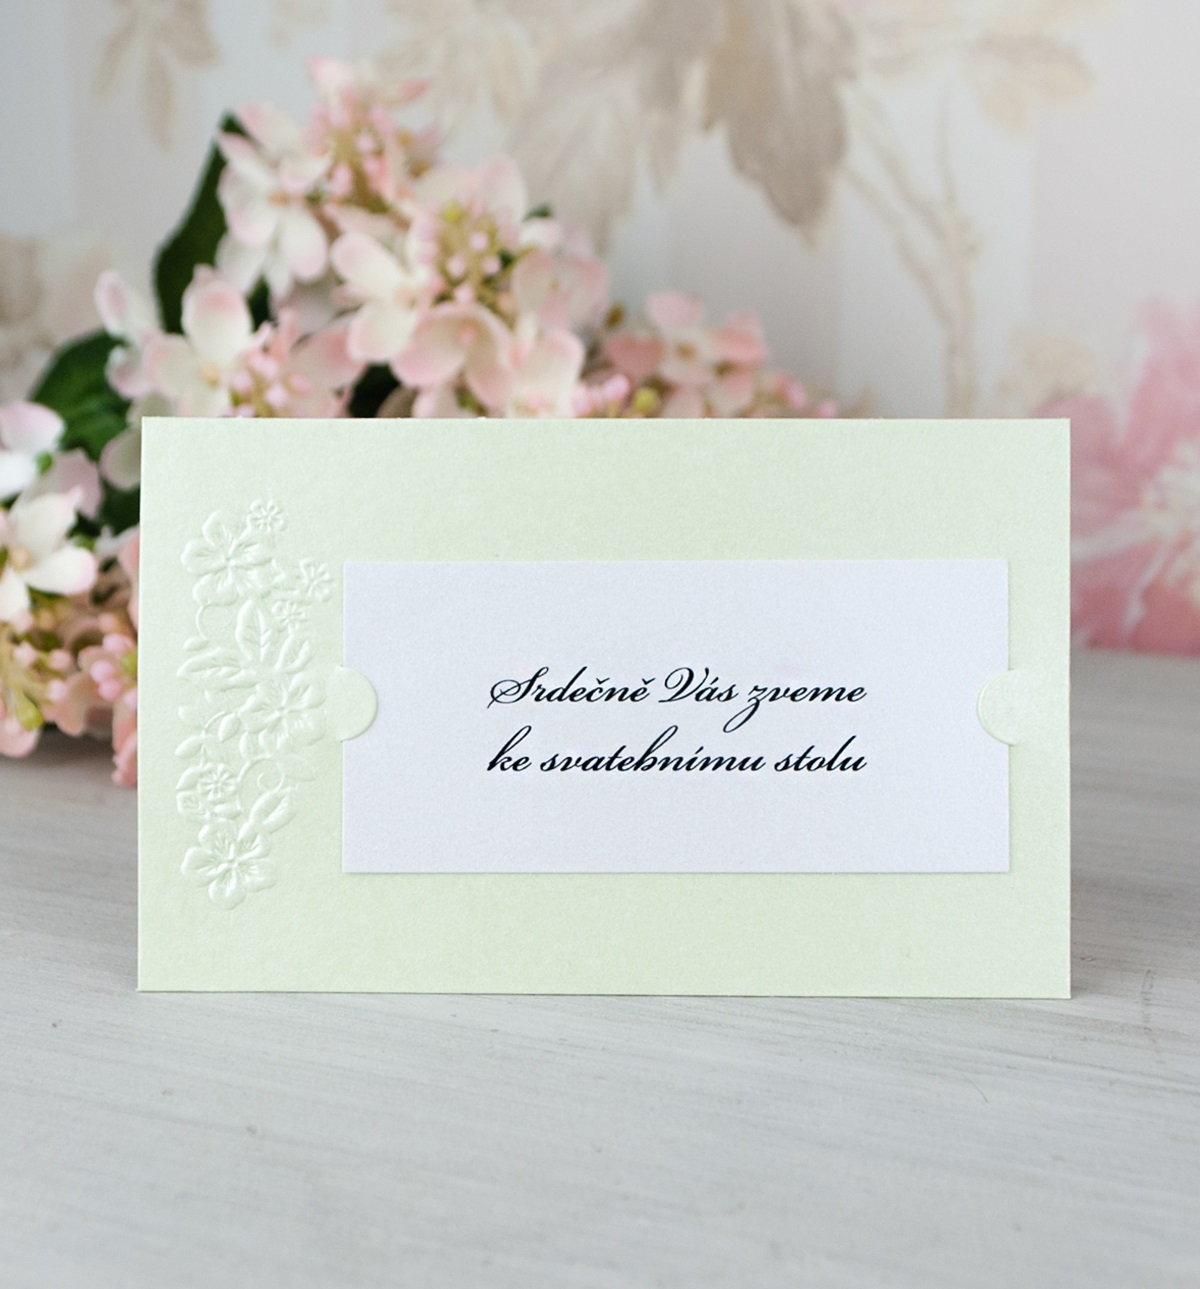 Pozvánka, informační karta – ze zeleného a bílého perleťového papíru, zdobena slepotiskem kytiček, a do zámečků je vložena kartička, 105 × 65 mm, jednostranná